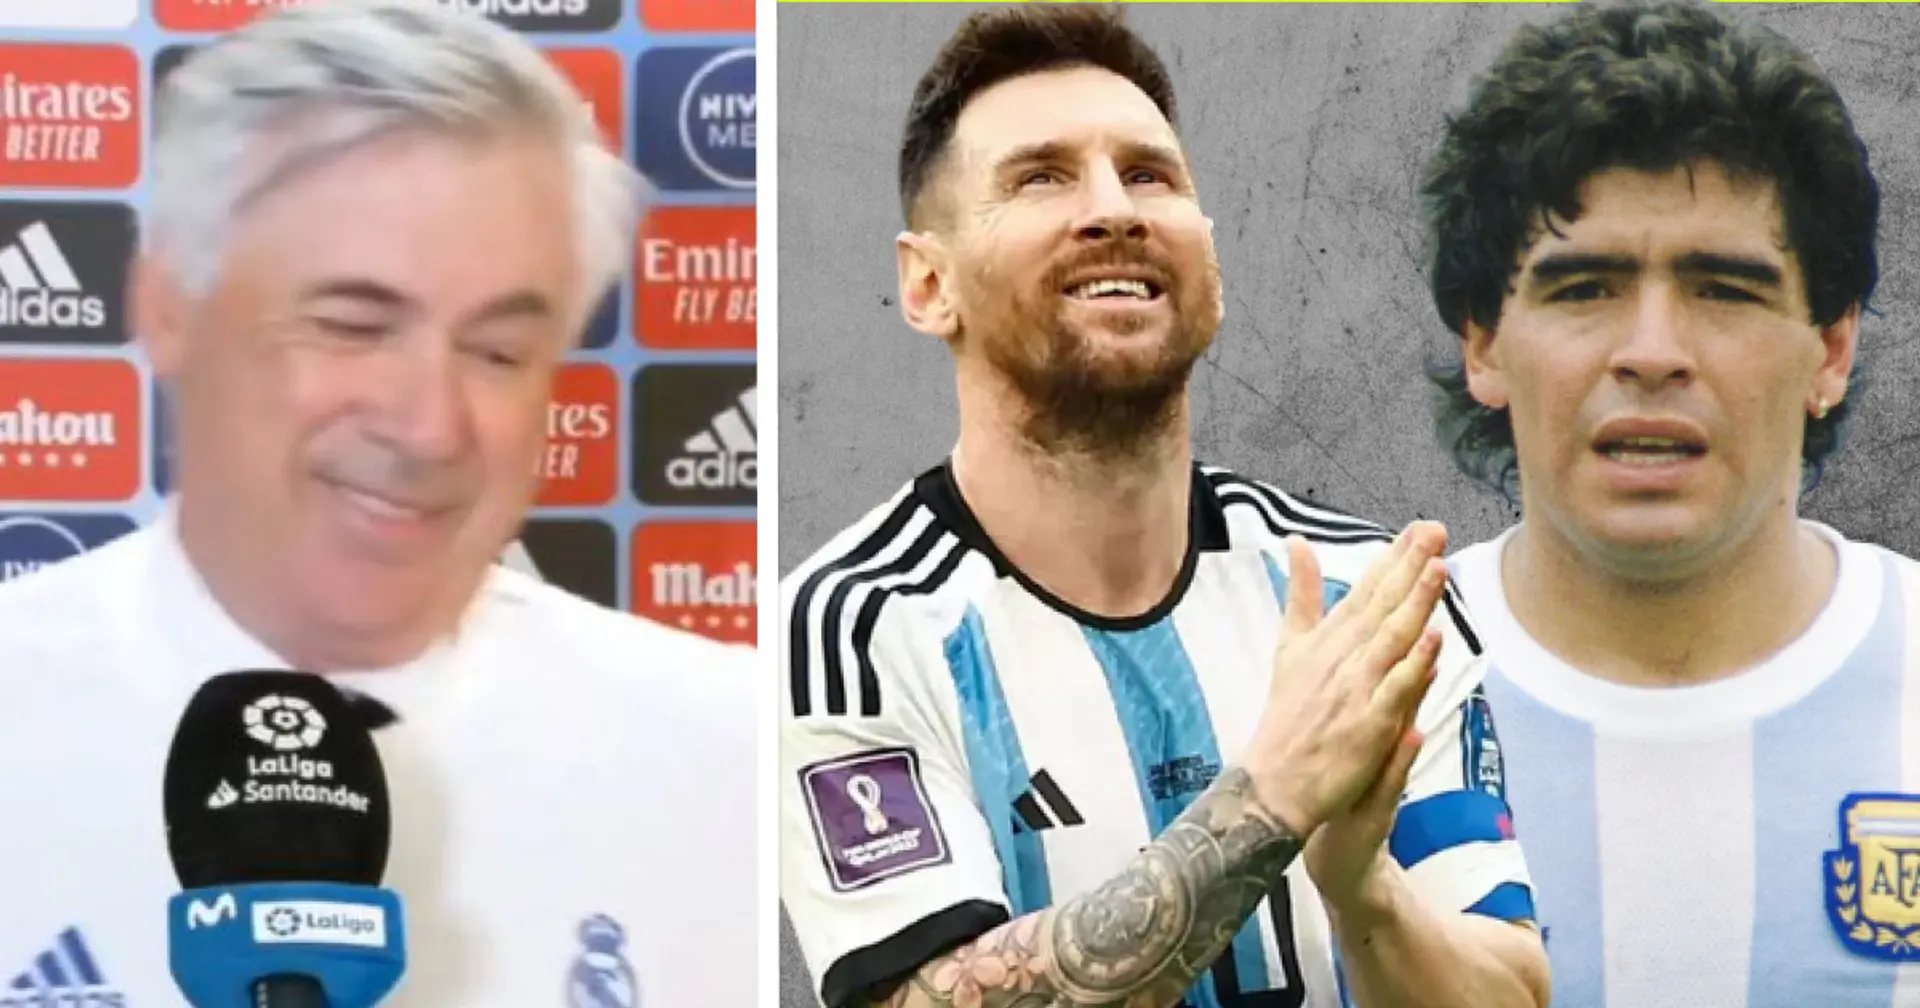 "Quel genre de question est-ce?": Ancelotti a été invité à choisir entre Maradona et Messi